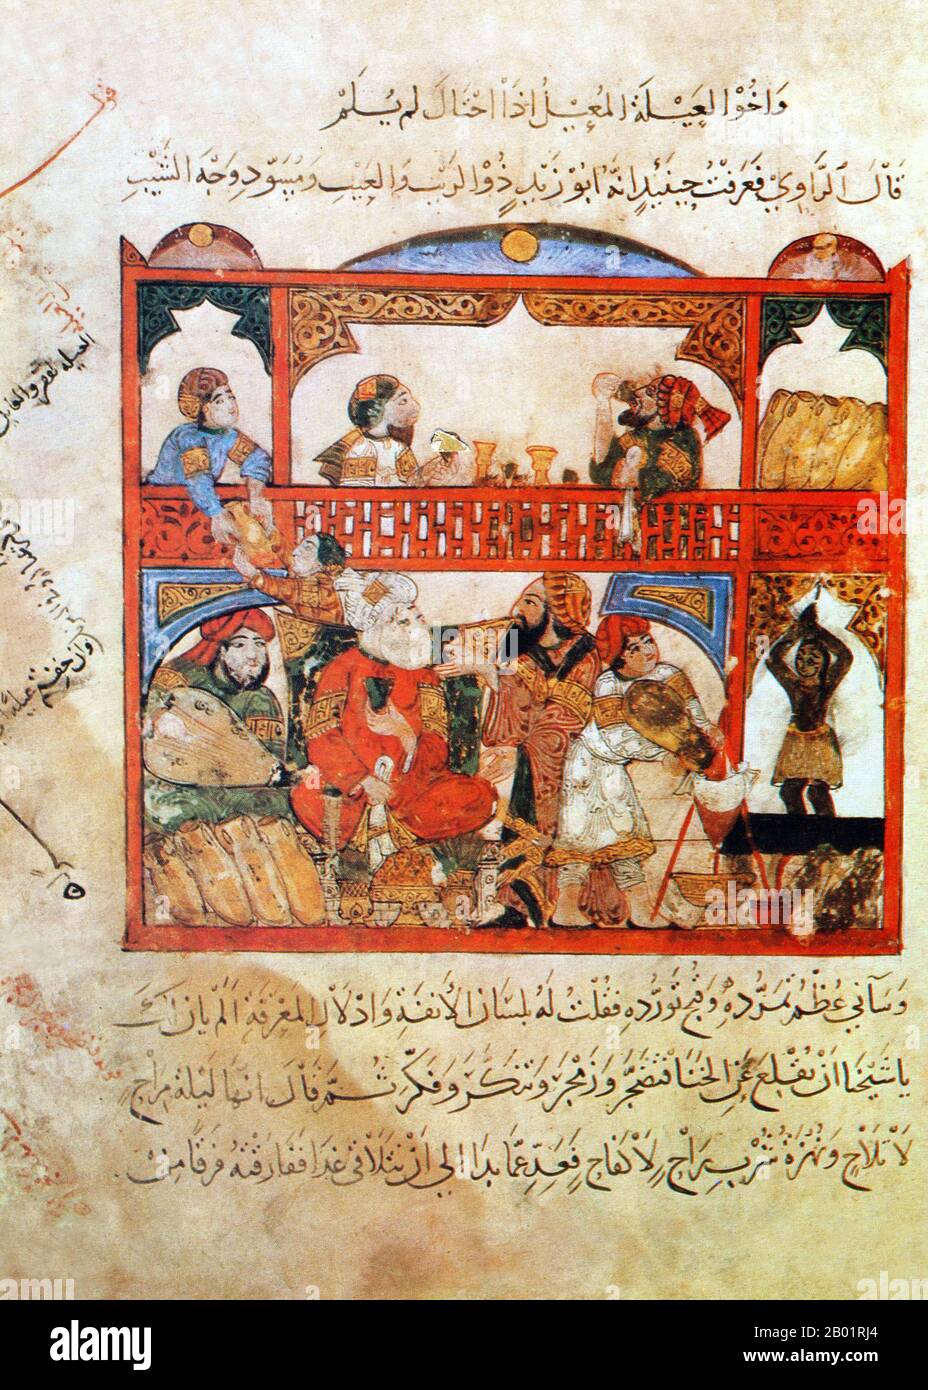 Iraq: Abu Zayd nella taverna o nell'osteria di Anah. Pittura in miniatura di Yahya ibn Mahmud al-Wasiti, 1237 d.C. Yahyâ ibn Mahmûd al-Wâsitî è stato un artista arabo islamico del XIII secolo. Al-Wasiti è nato a Wasit, nel sud dell'Iraq. Era noto per le sue illustrazioni del Maqam di al-Hariri. I Maqāma (letteralmente "assemblee") sono un genere letterario arabo (originariamente) di prosa rimata con intervalli di poesia in cui la stravaganza retorica è evidente. Si dice che l'autore del X secolo Badī' al-Zaman al-Hamadhāni abbia inventato la forma, che fu estesa da al-Hariri di Bassora nel secolo successivo. Foto Stock